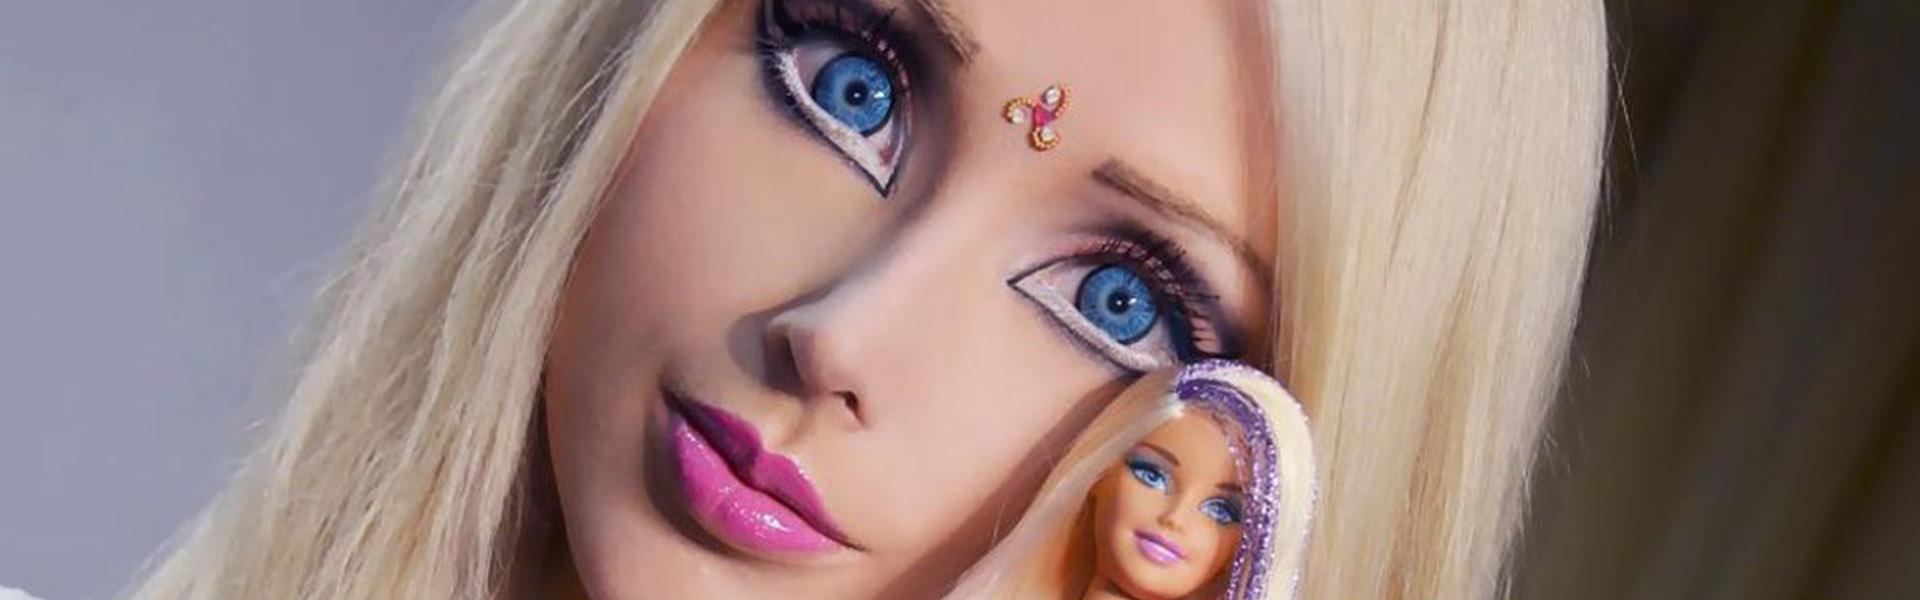 Валерия Лукьянова кукла Барби 2020 сейчас